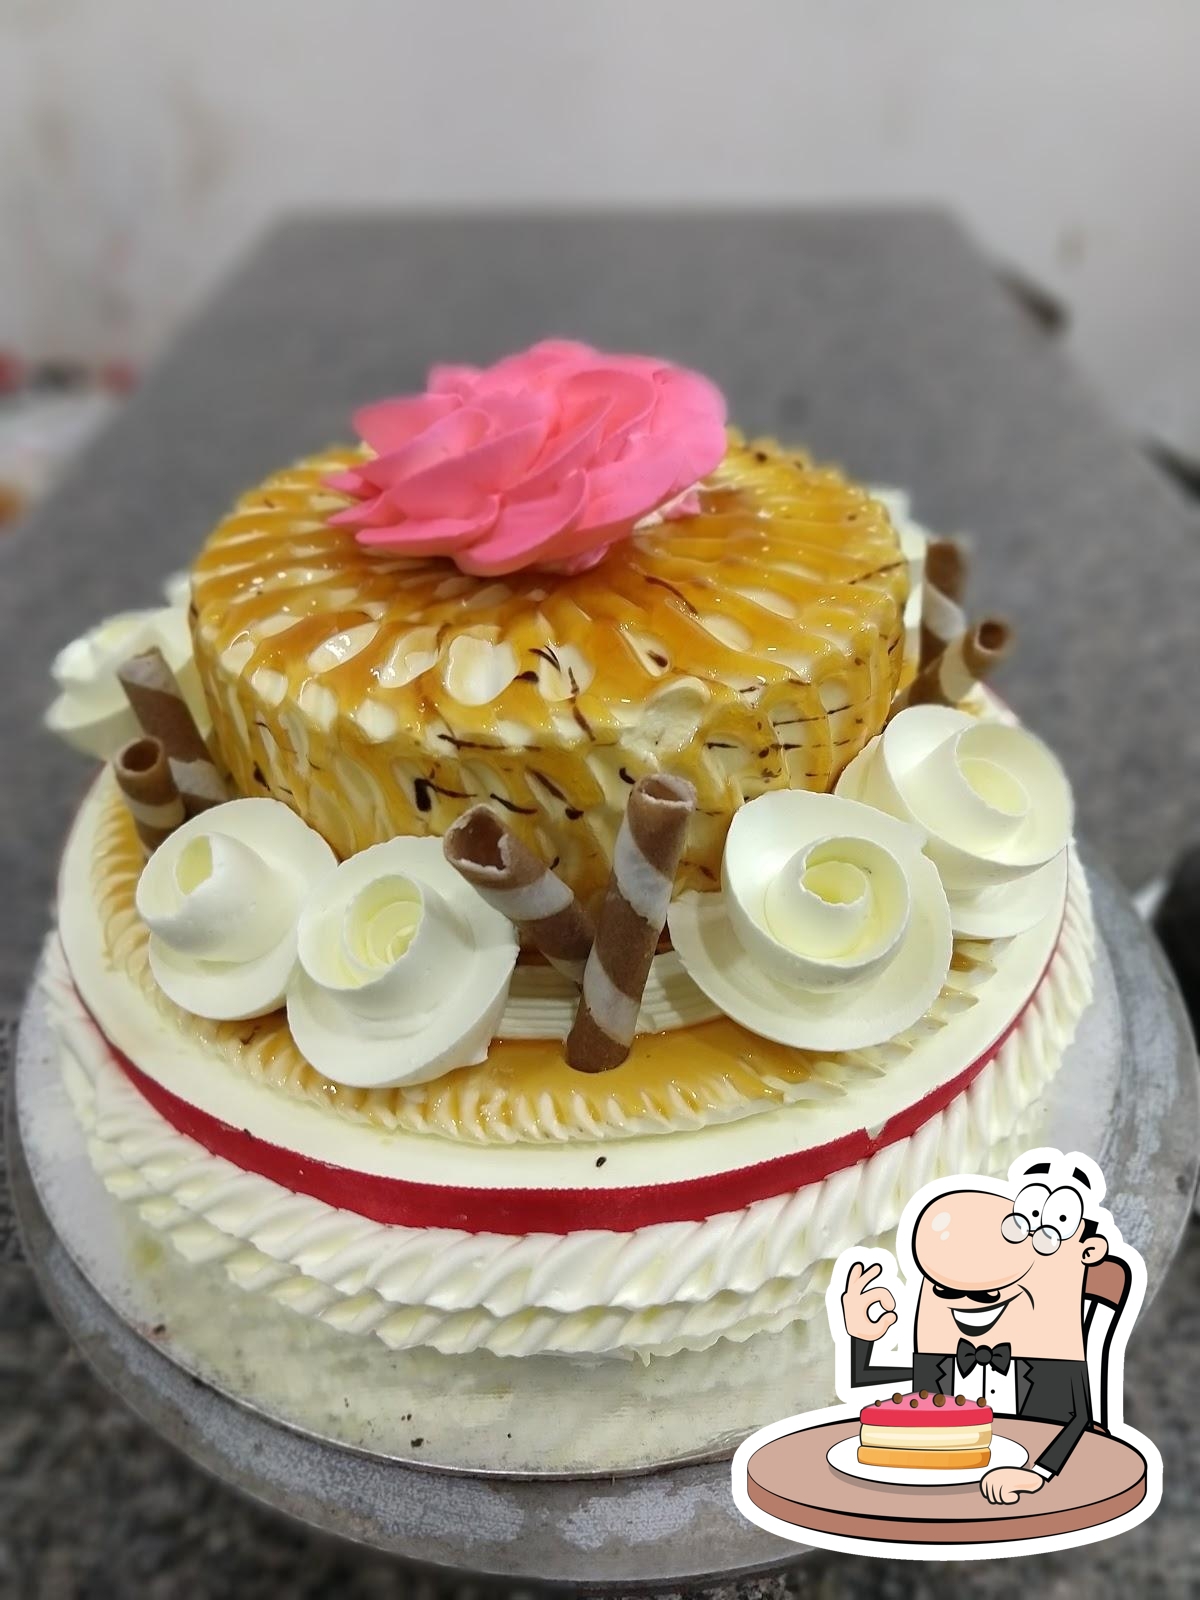 r55d Red Velvet Sweet Bakes cake 2021 09 6